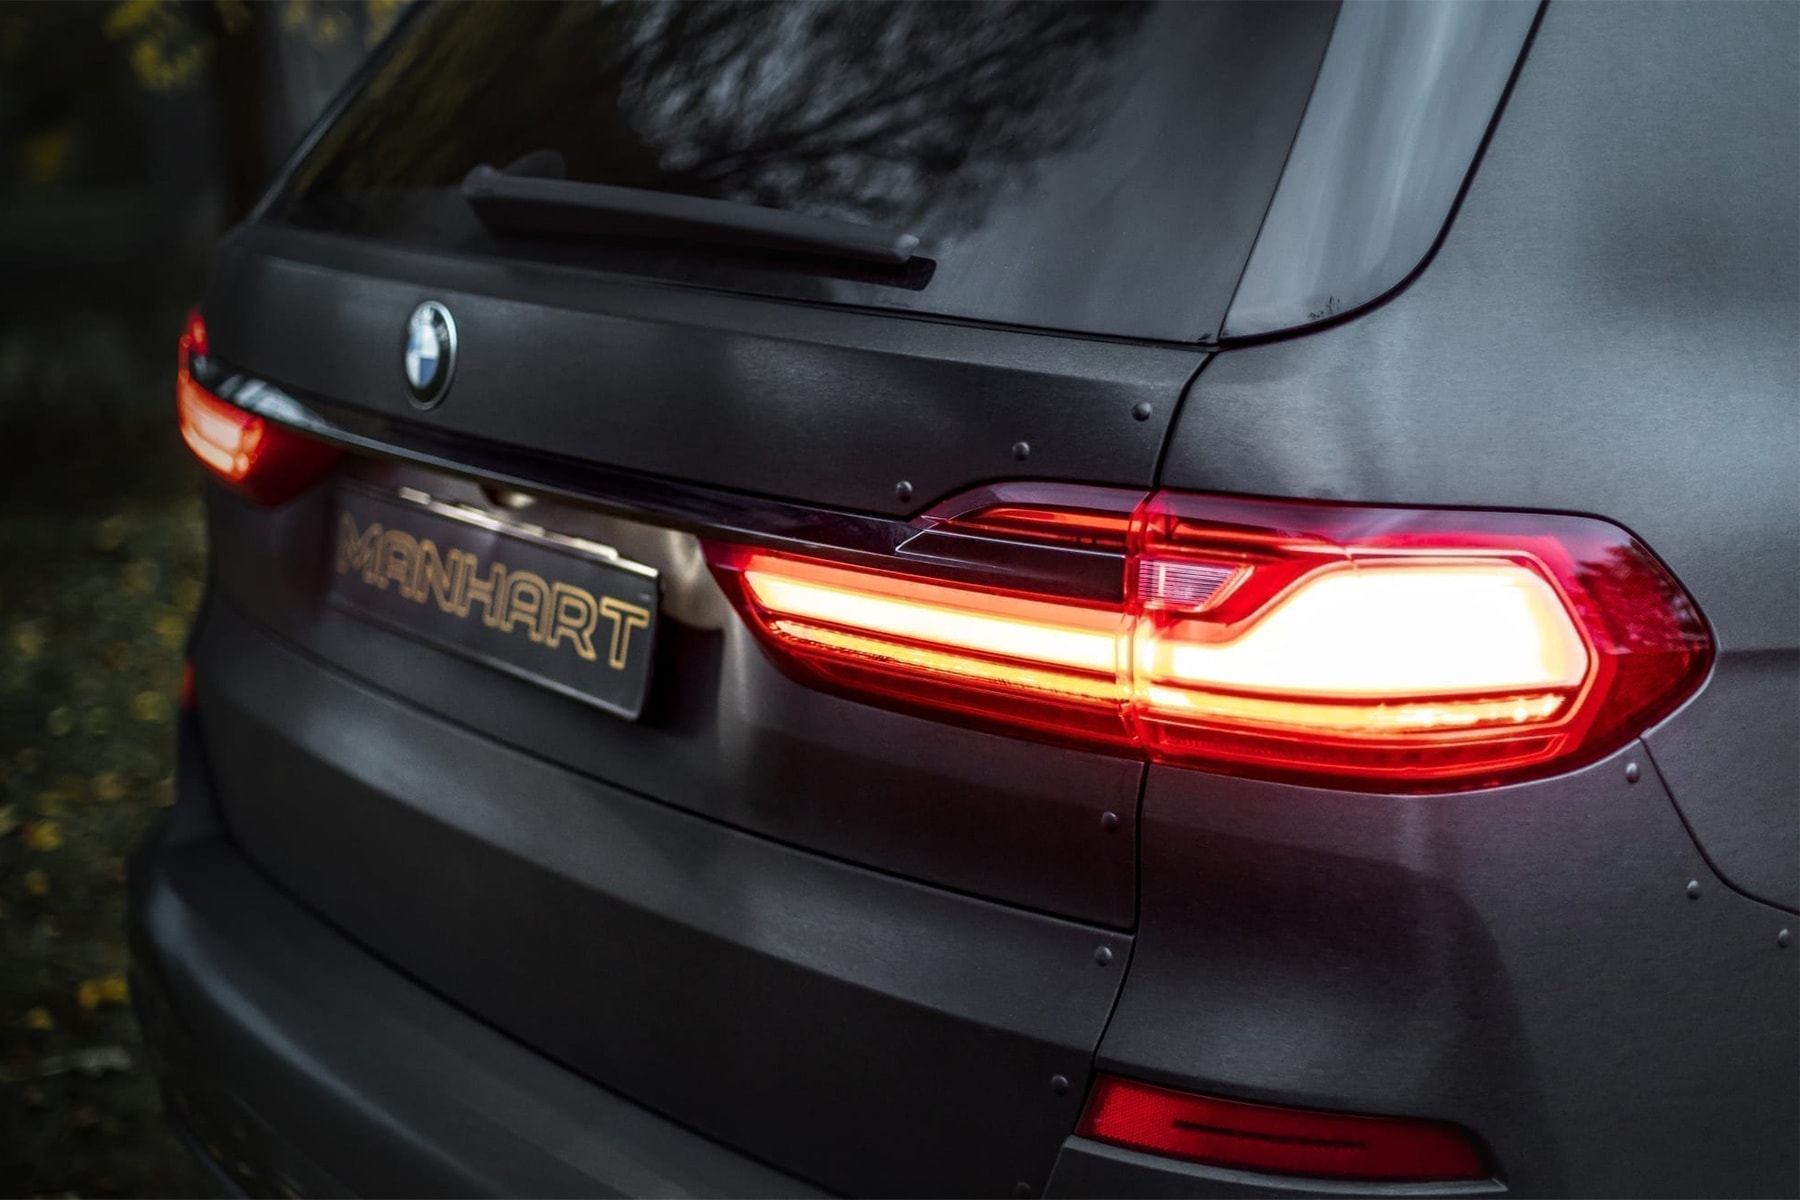 霸氣重塑 – MANHART 打造 BMW X7 全新越野「Dirt Edition」改裝車型